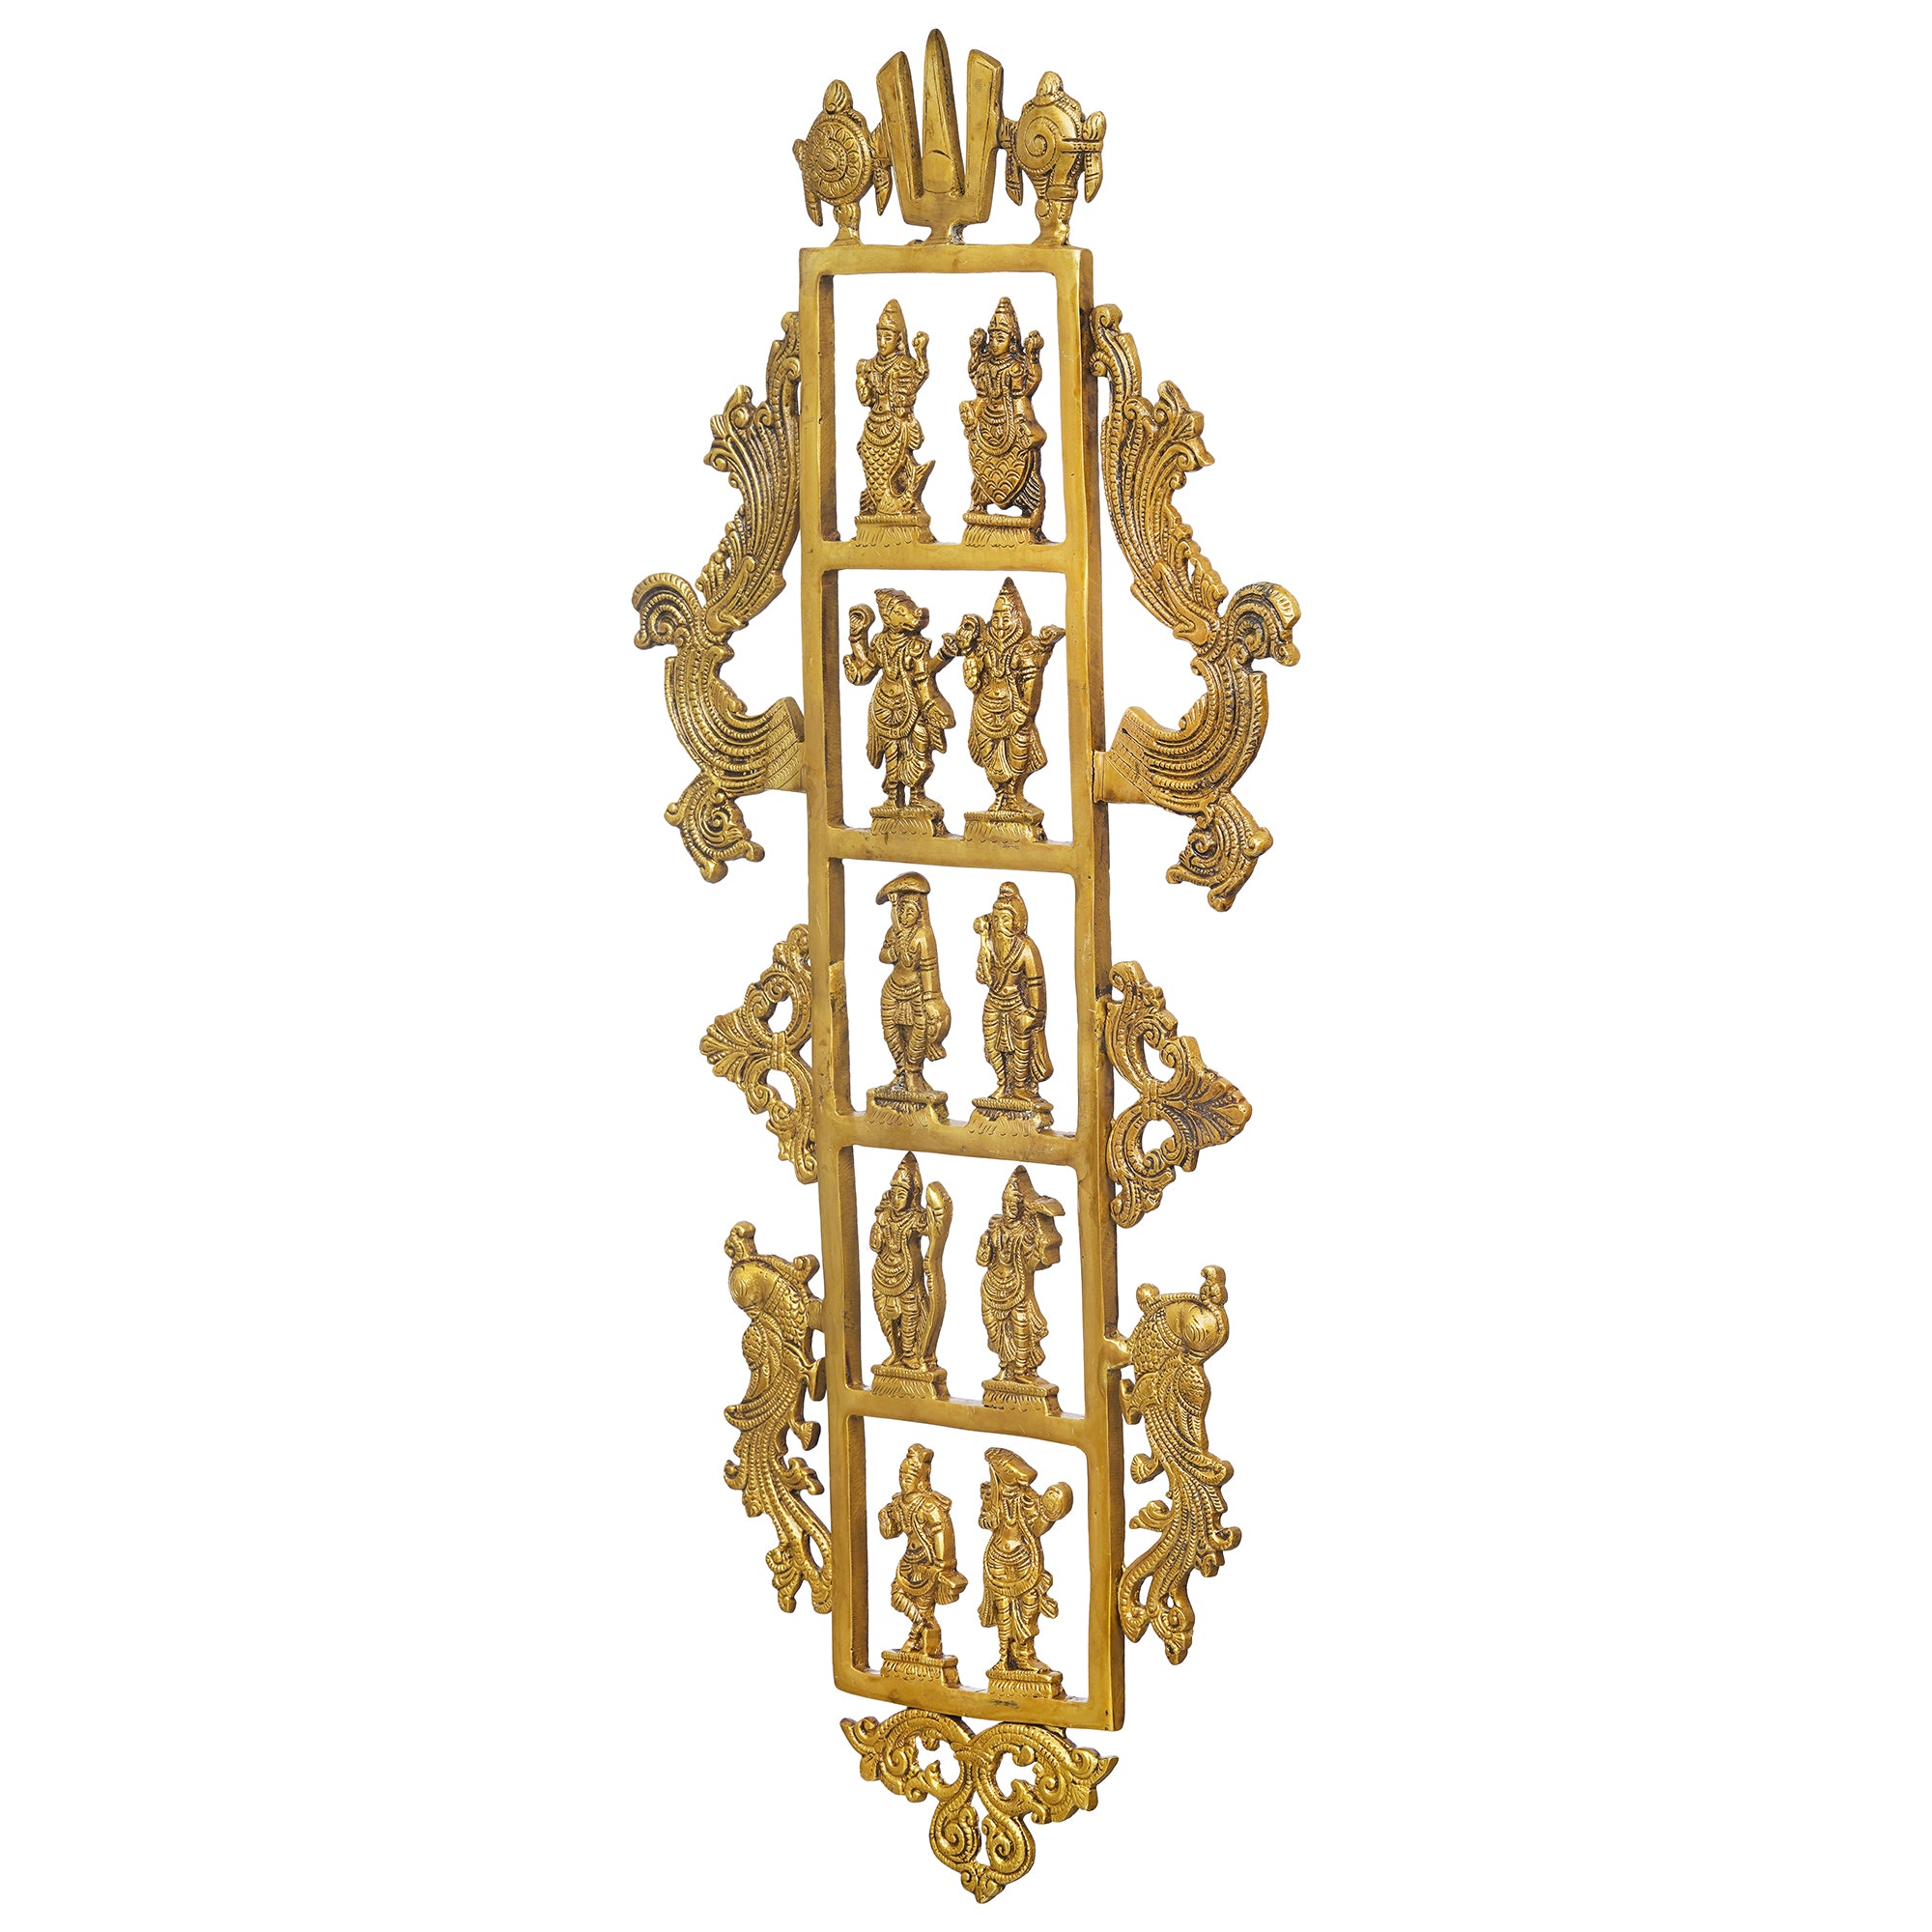 eCraftIndia Golden Brass Lord Vishnu Dashavatara - Ten Incarnations of Vishnu Religious Wall Hanging 7